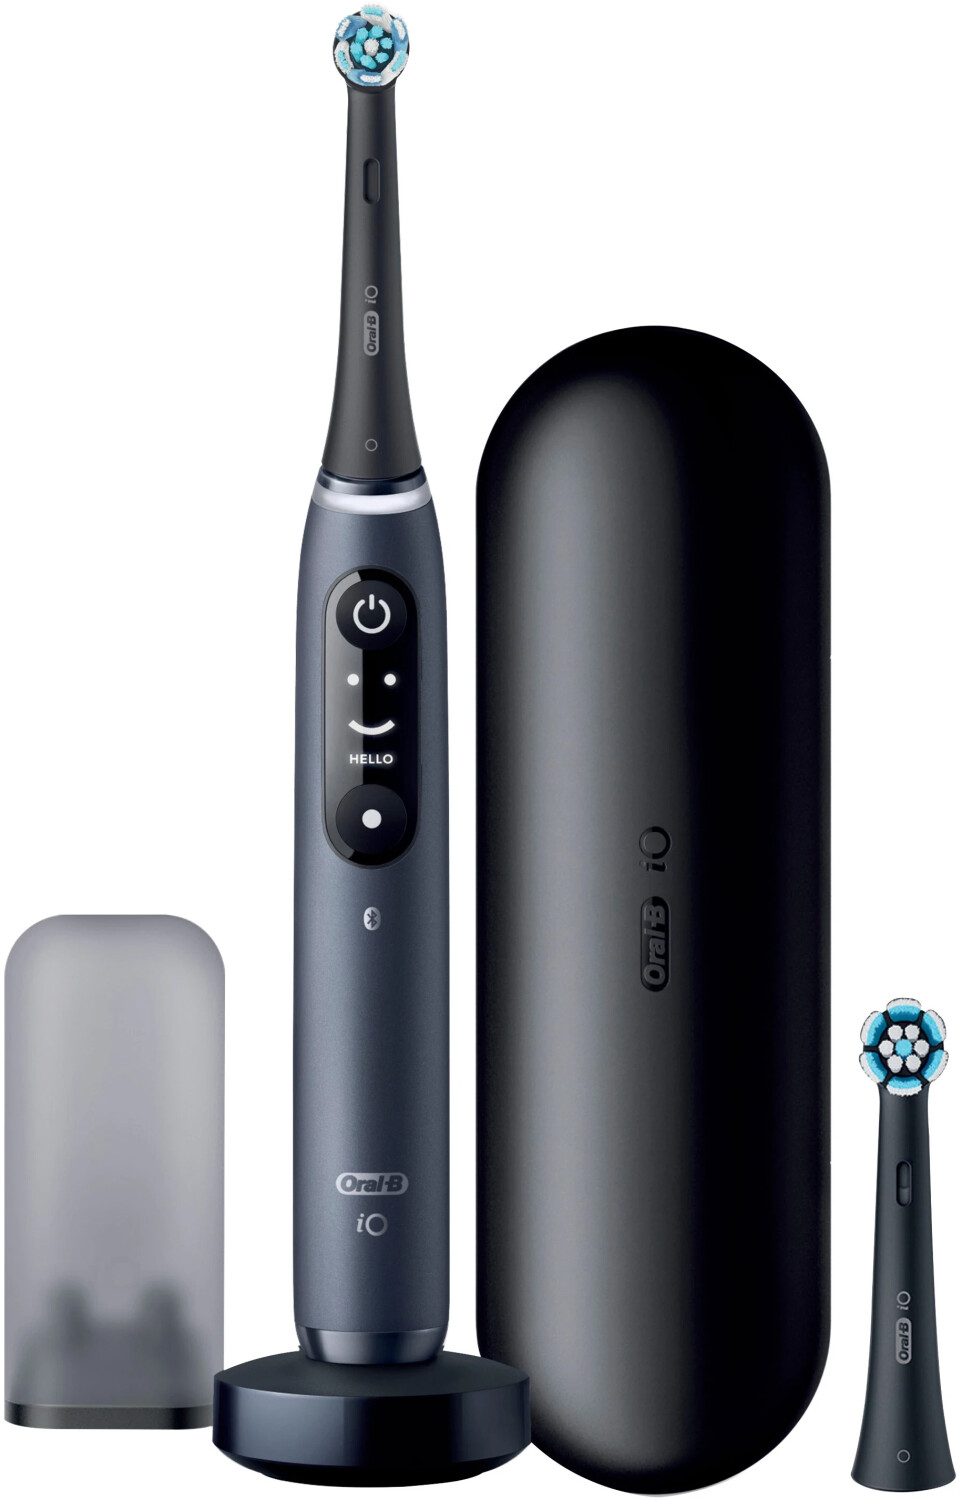 Oral-B iO Series 7N Set Black Onyx 2, elektrische Zahnbürste